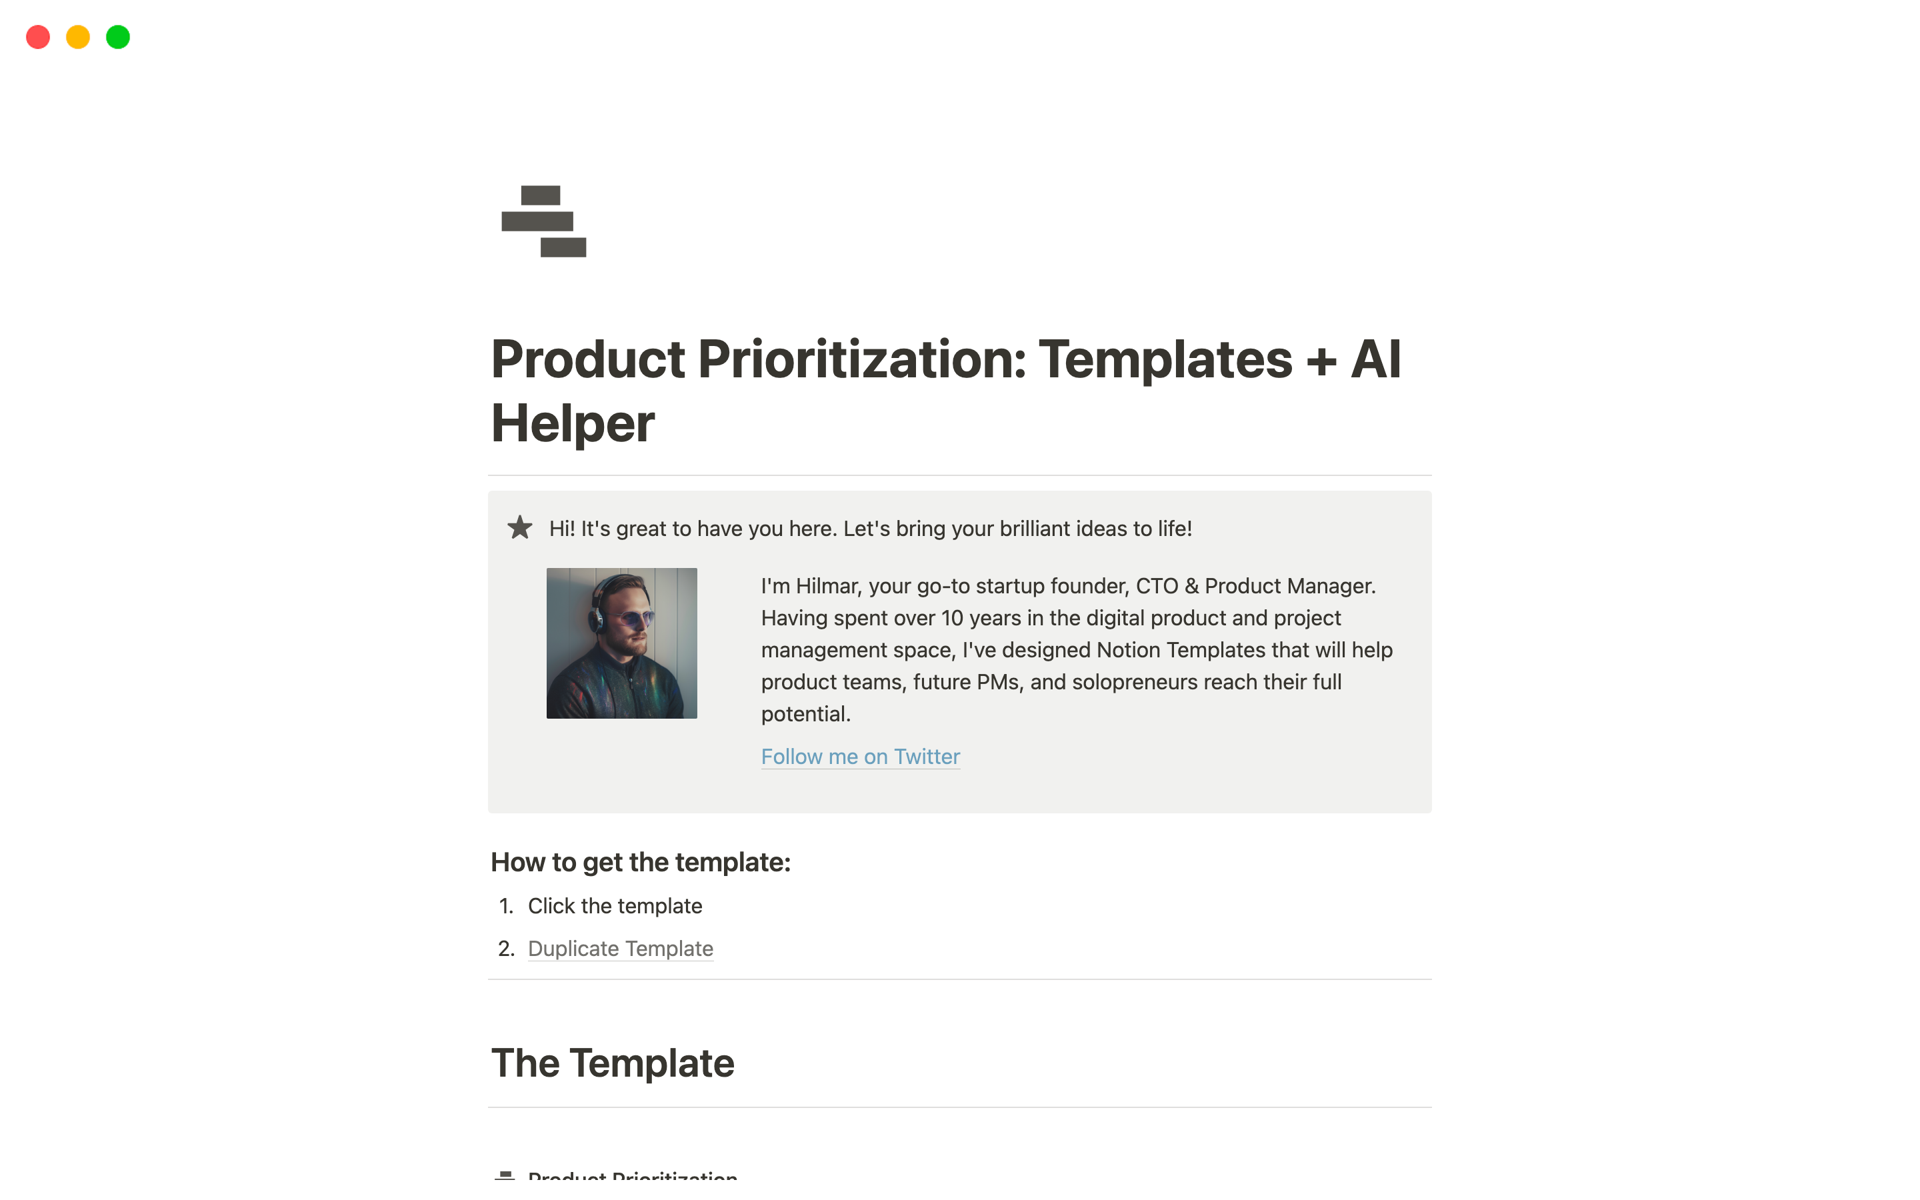 Vista previa de plantilla para Product Prioritization: Templates + AI Helper